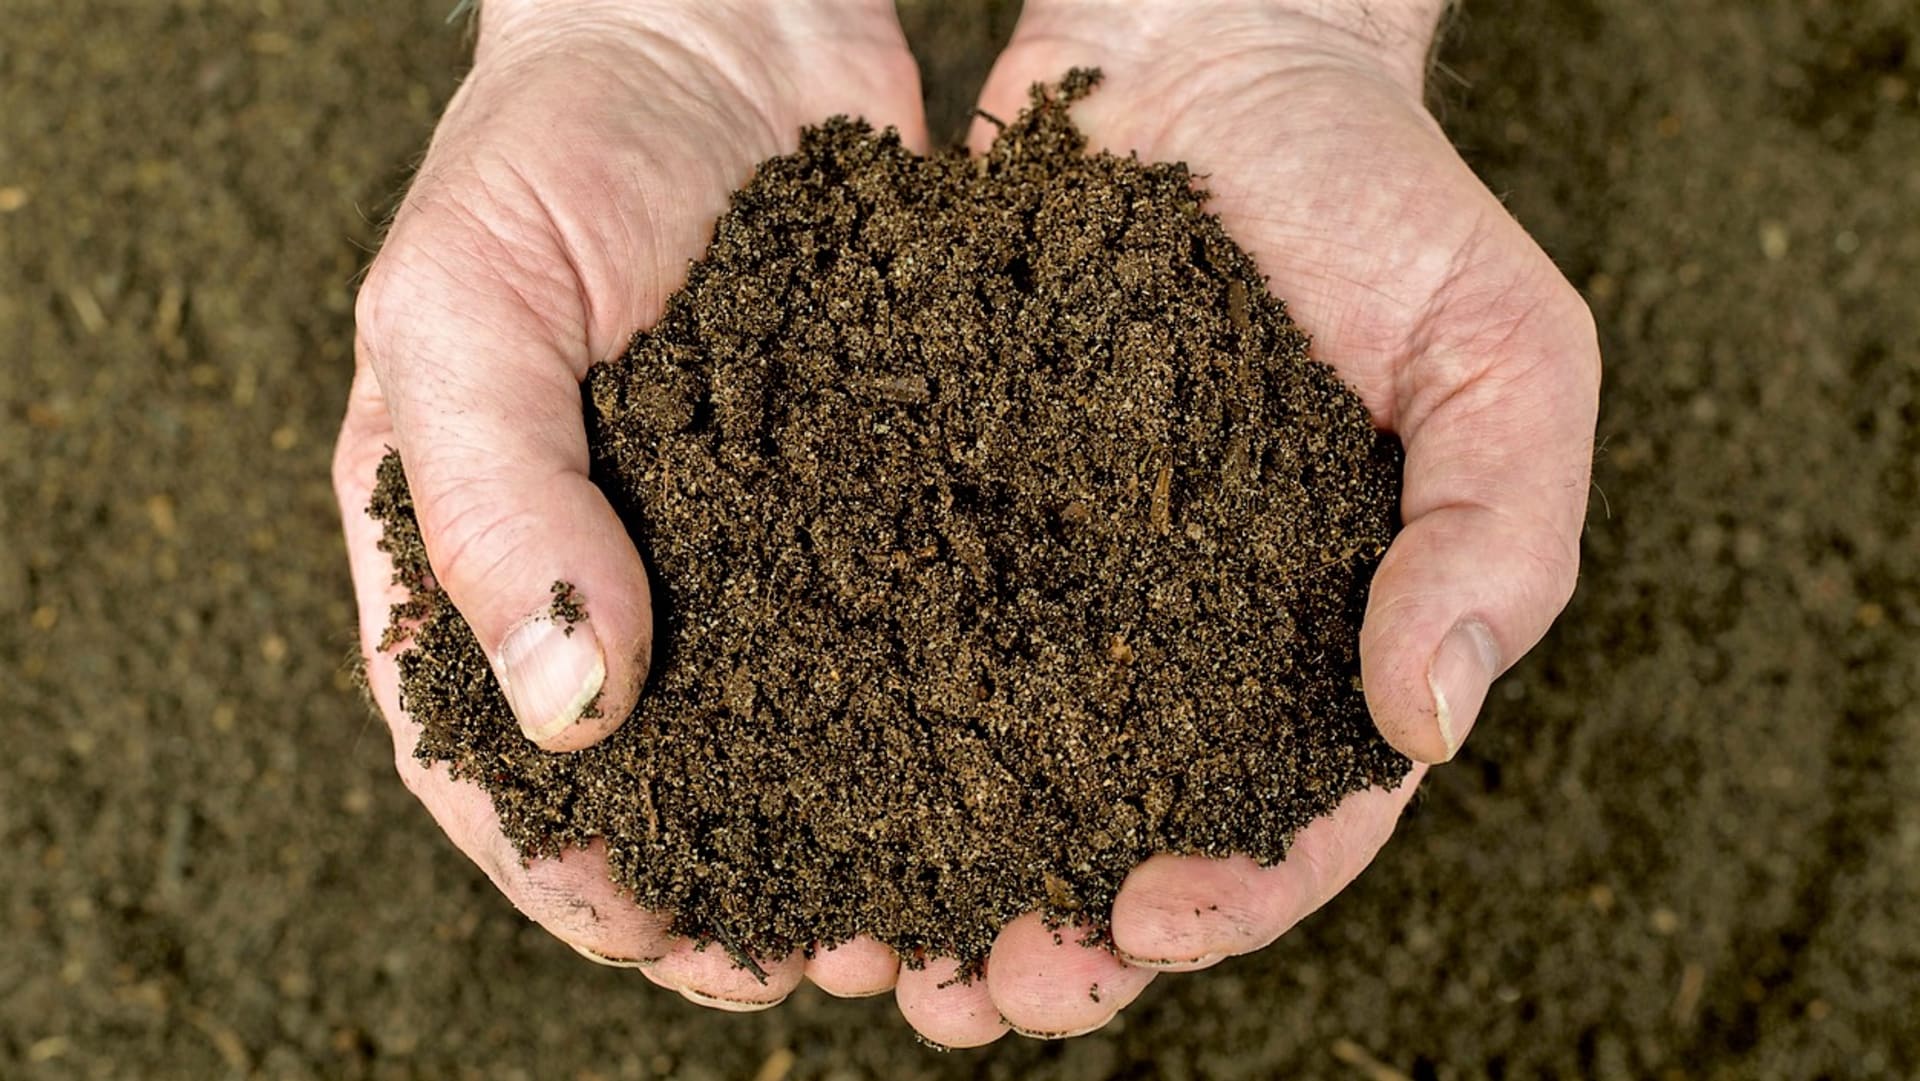 Dobře vyzrálý kompost má tmavohnědou barvu, drolí se a příjemně zemitě voní. Než se hromada kompostu změní na opravdu dobrý humus, může to trvat jeden až dva roky.